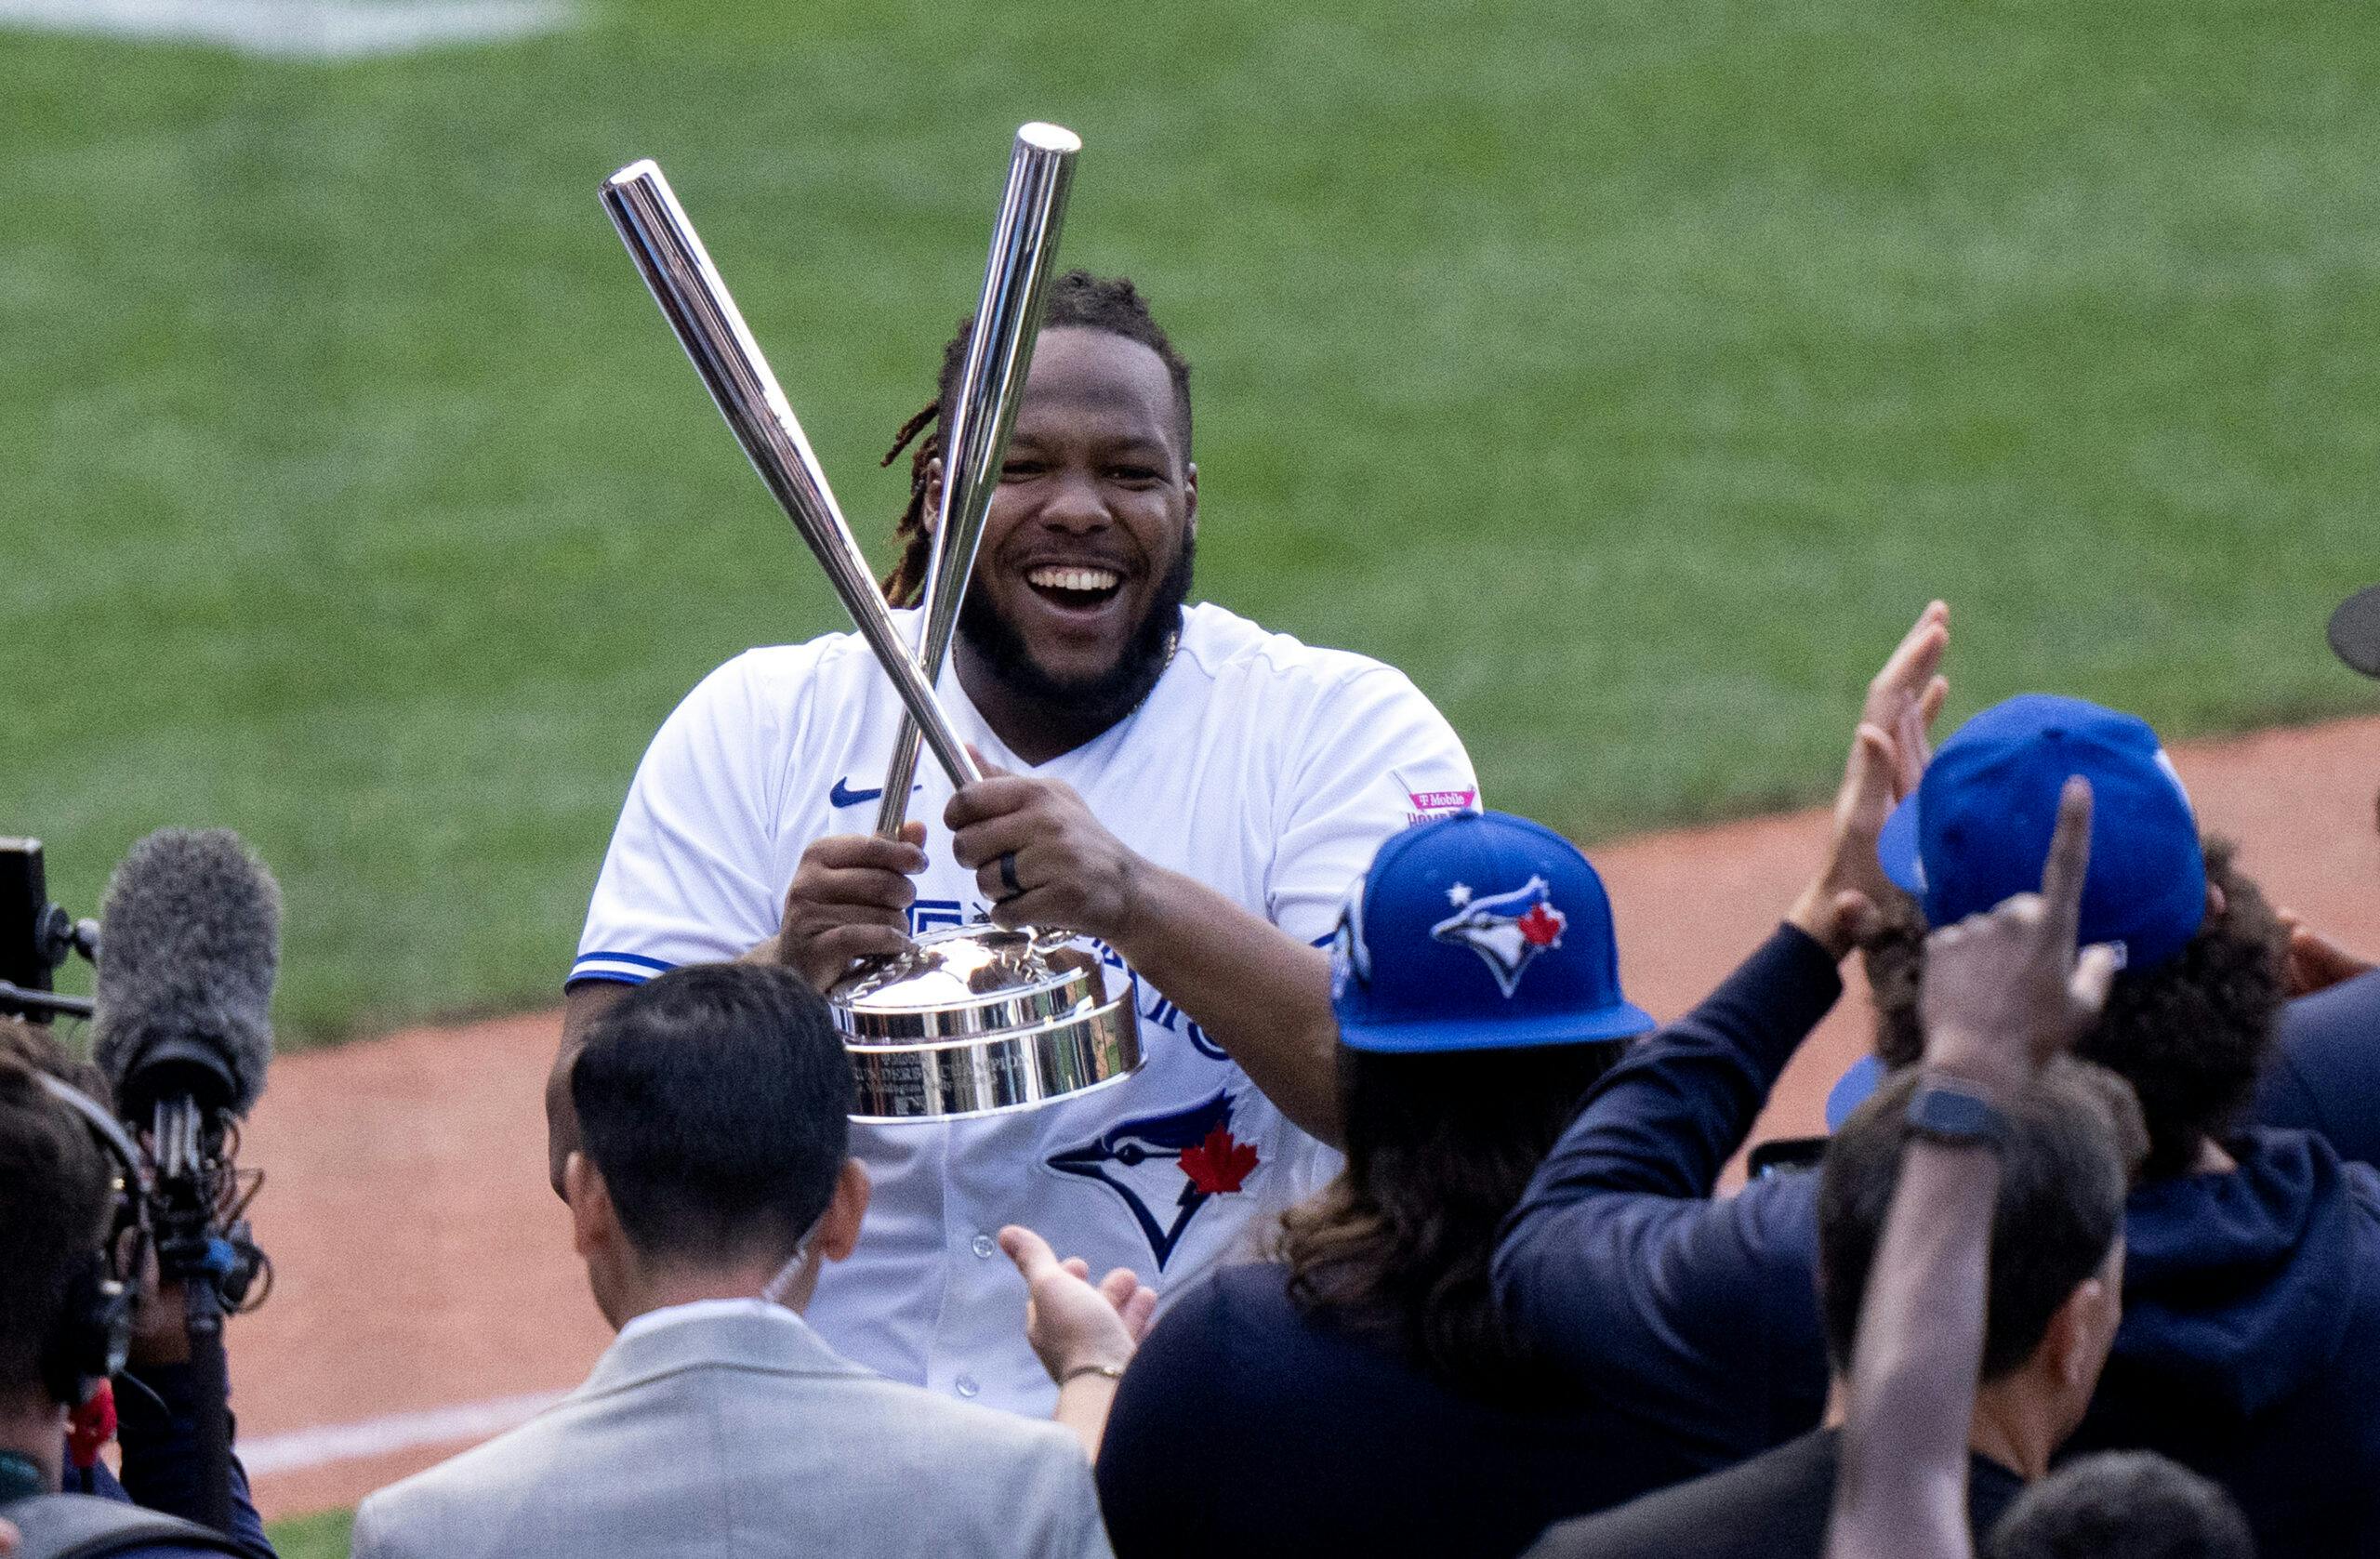 Toronto's Vladimir Guerrero Jr. Is Baseball's Prince Who Was